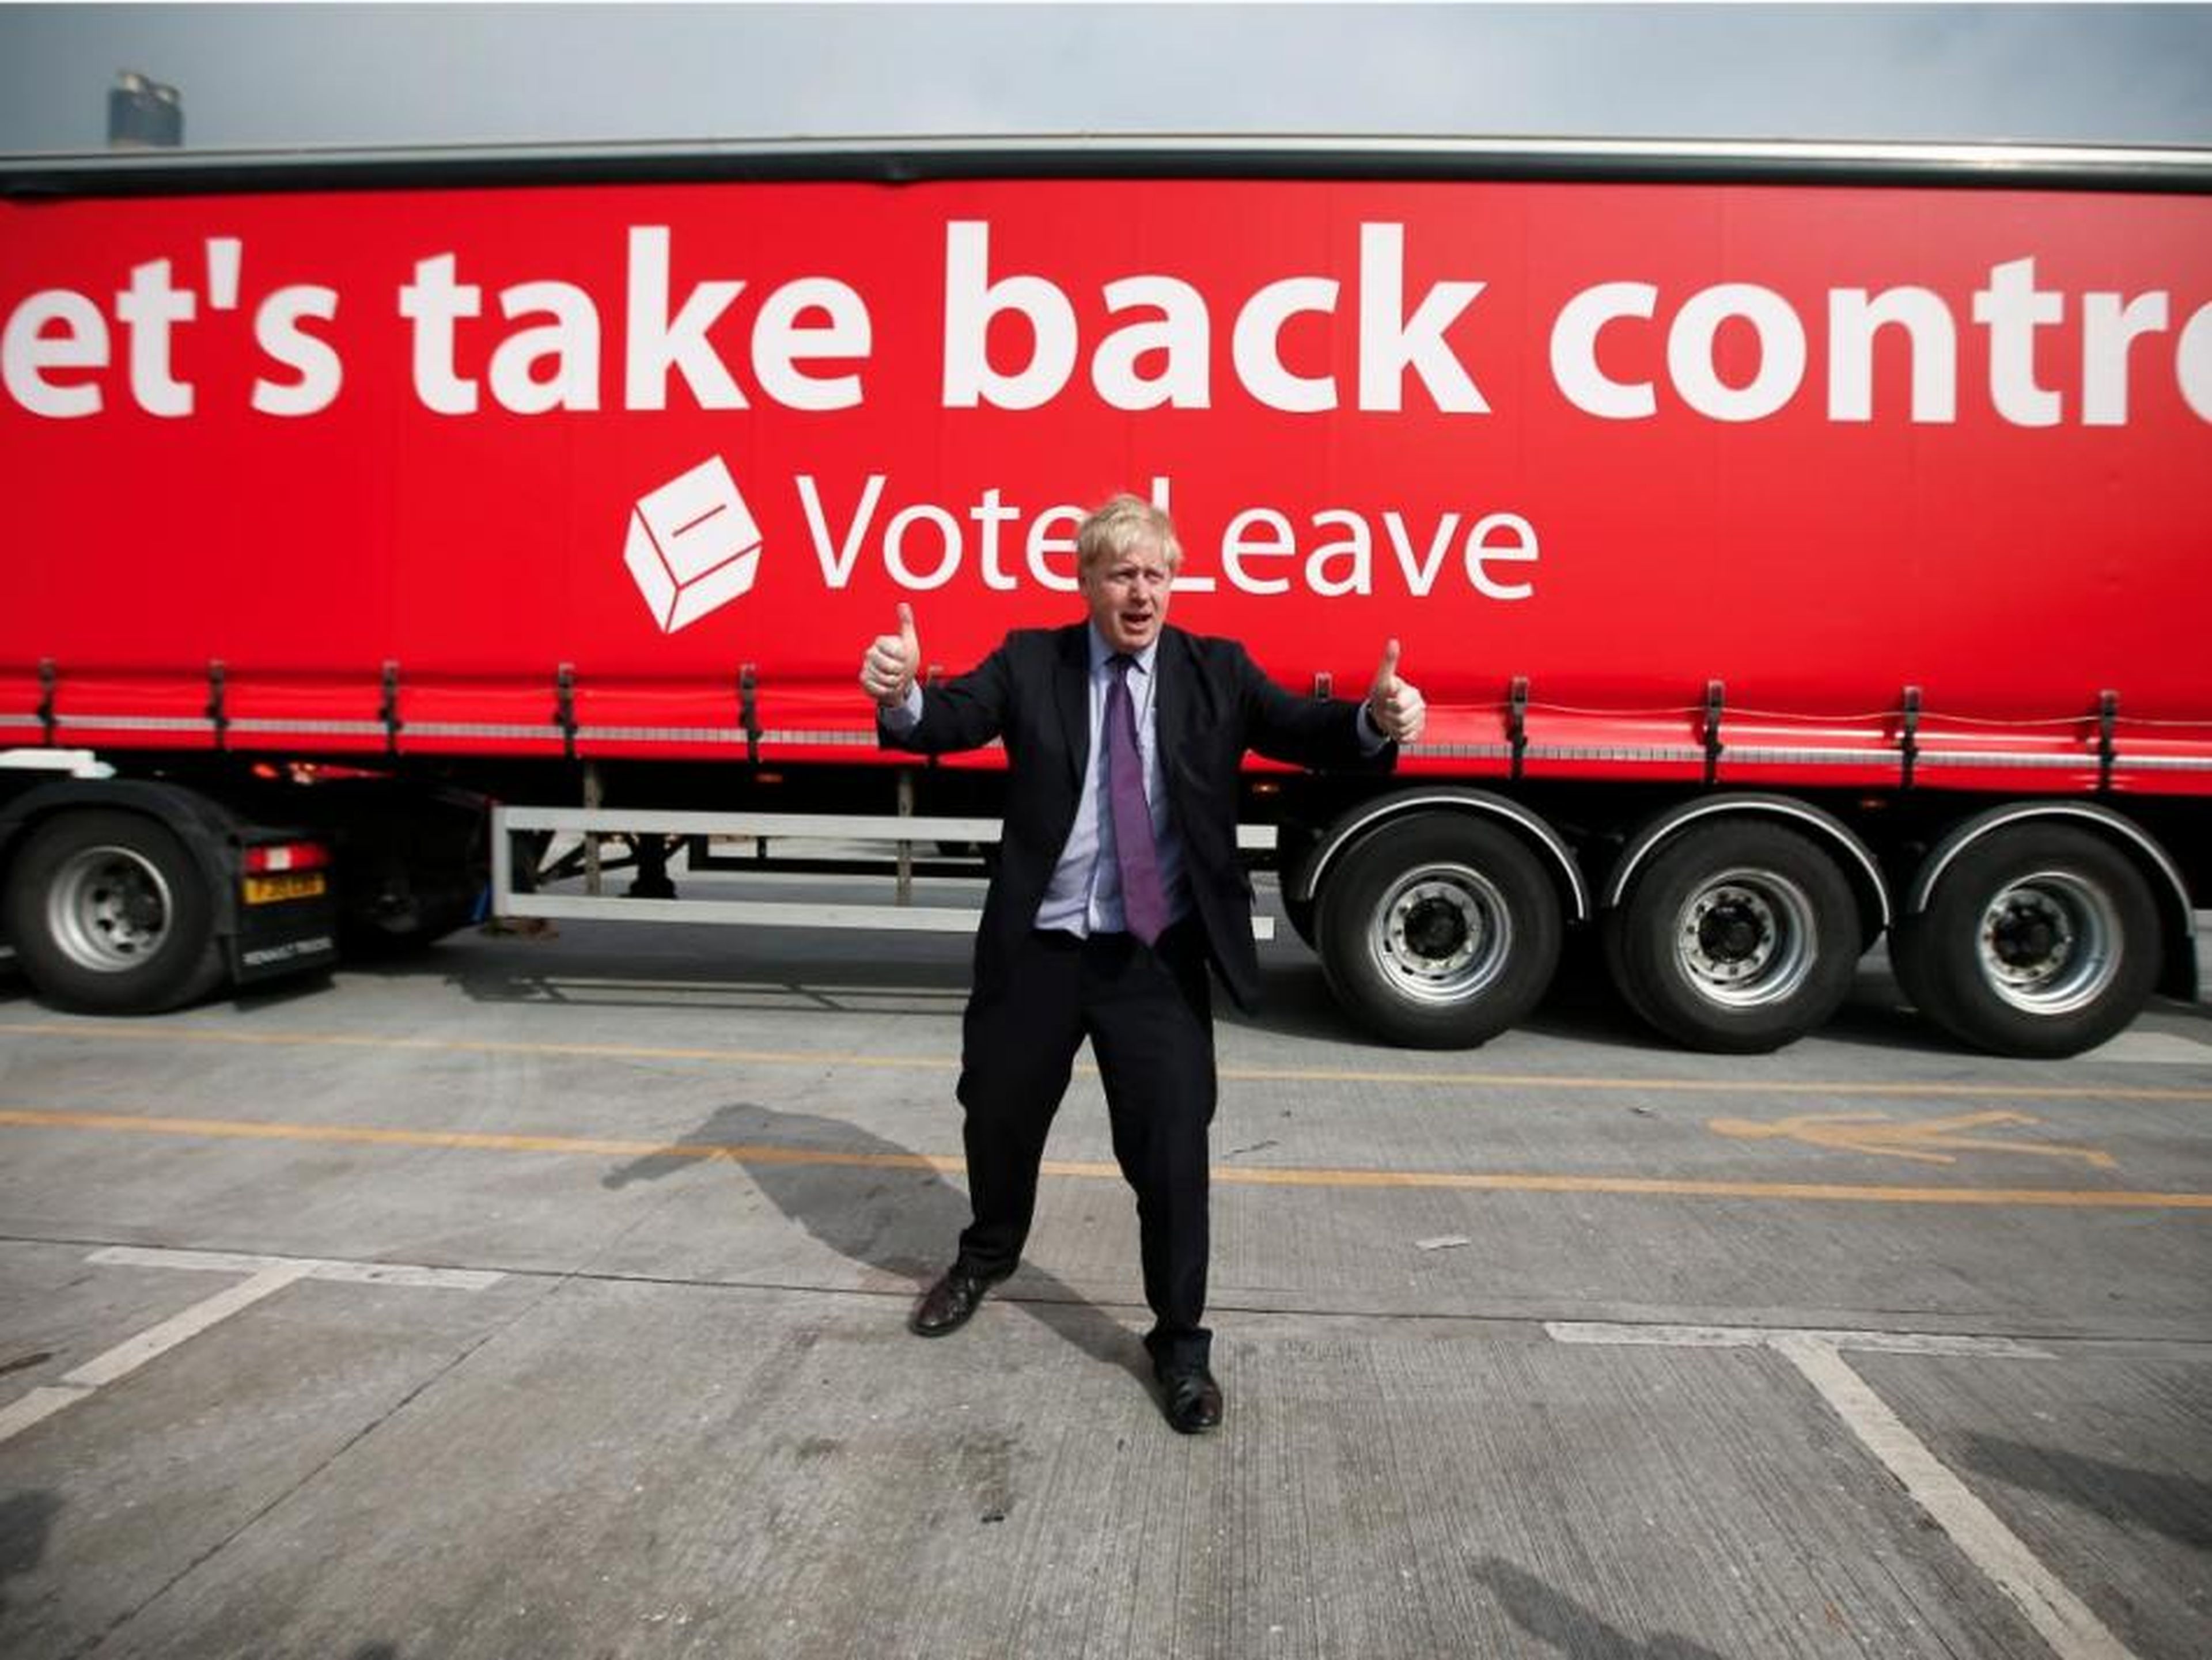 El 21 de febrero Boris se puso a favor de la salida de la UE, dando un impulso significativo a su campaña "Leave"